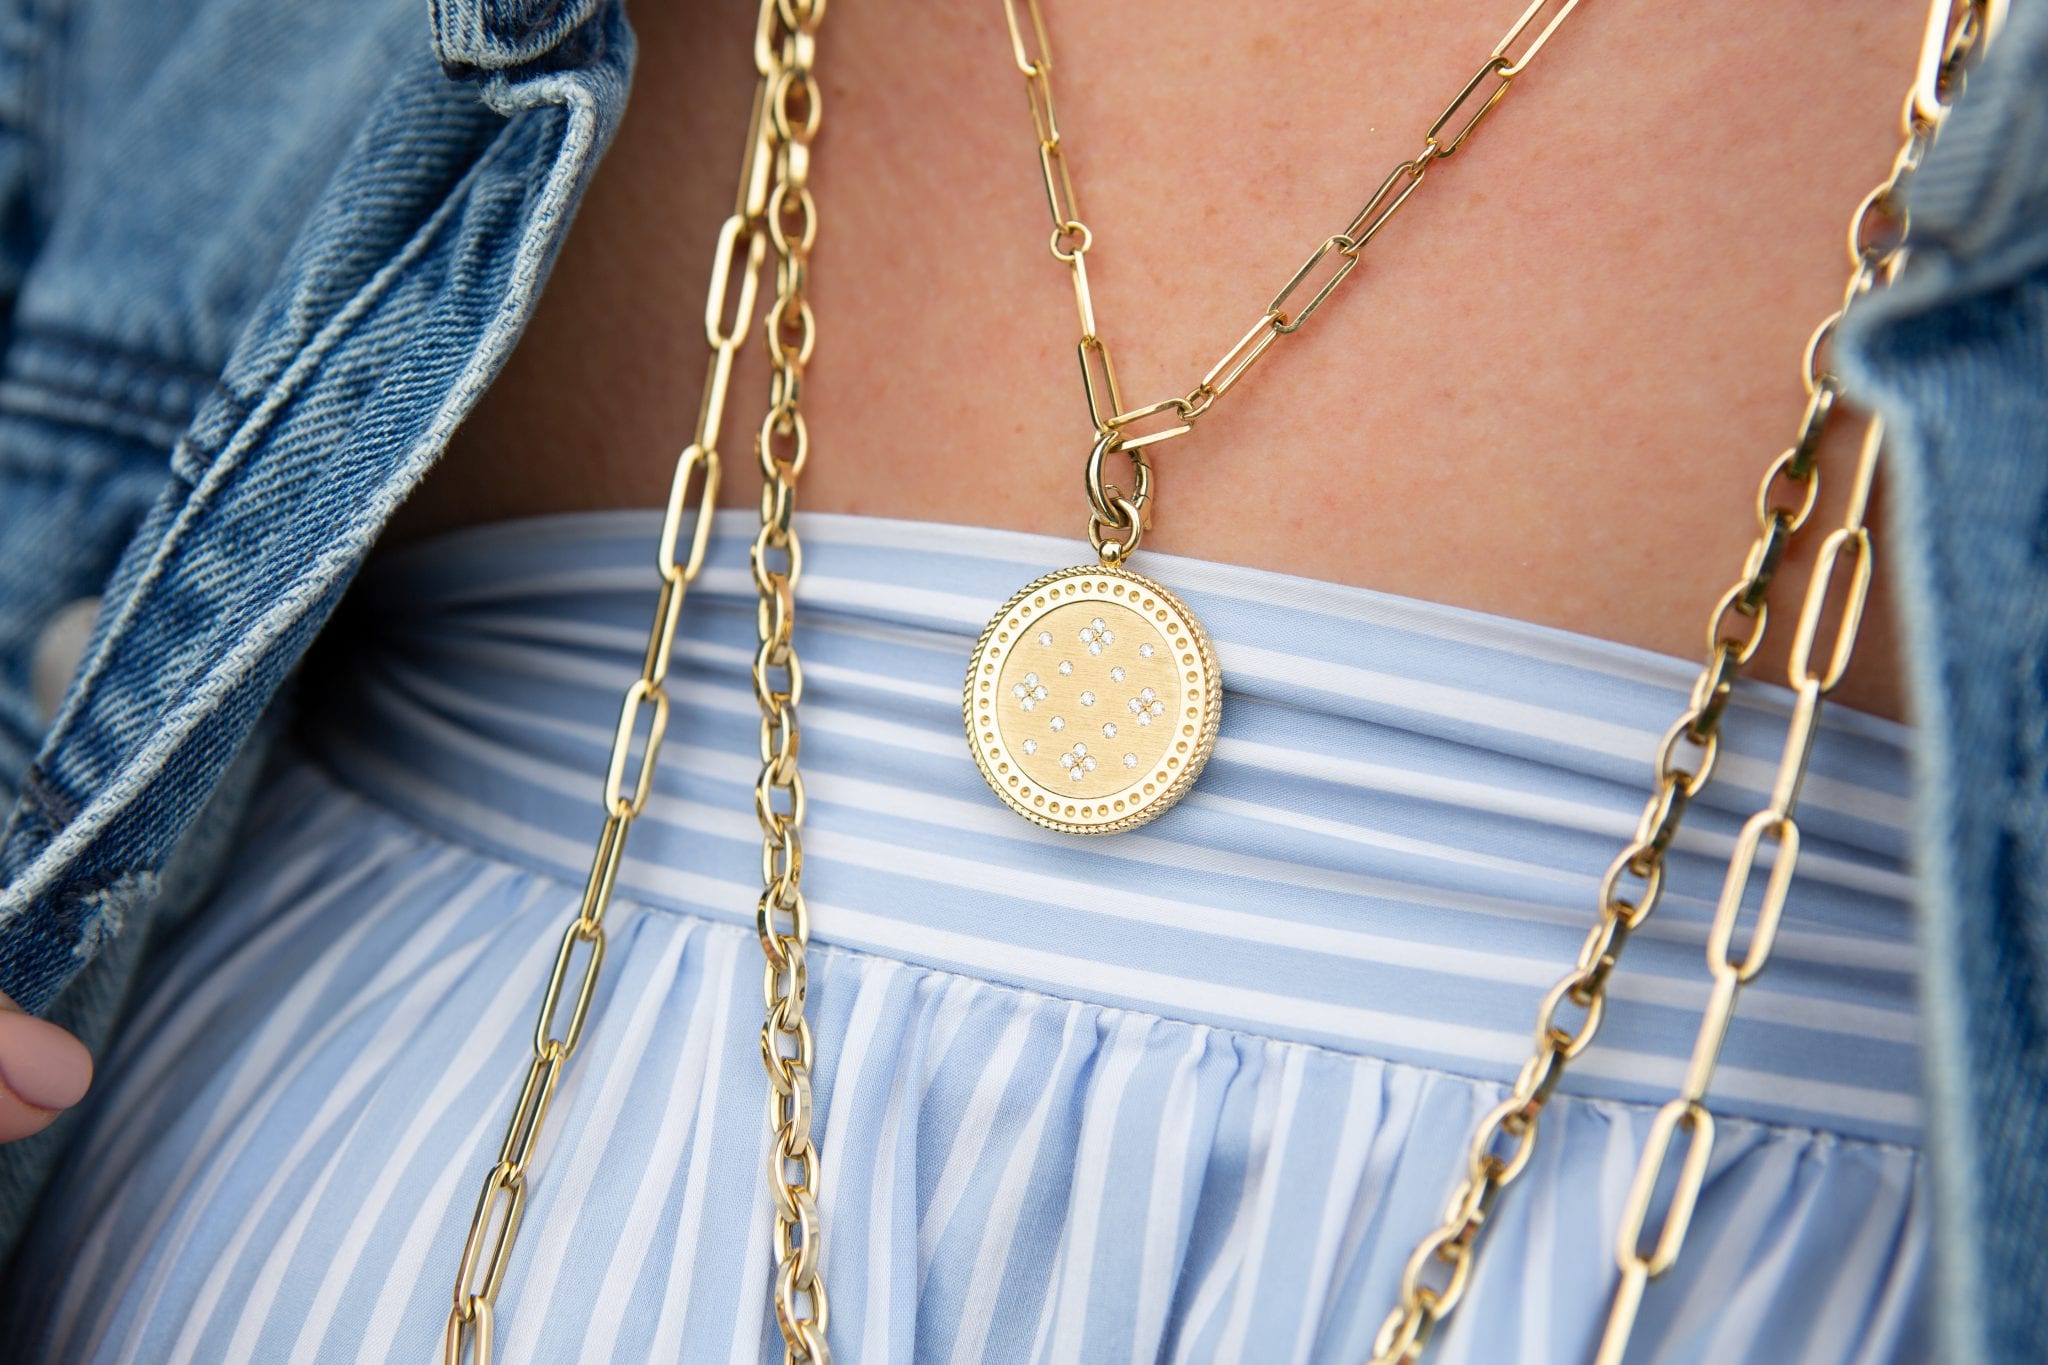 Roberto Coin 18k Venetian Princess Medallion Diamond Pendant Necklace